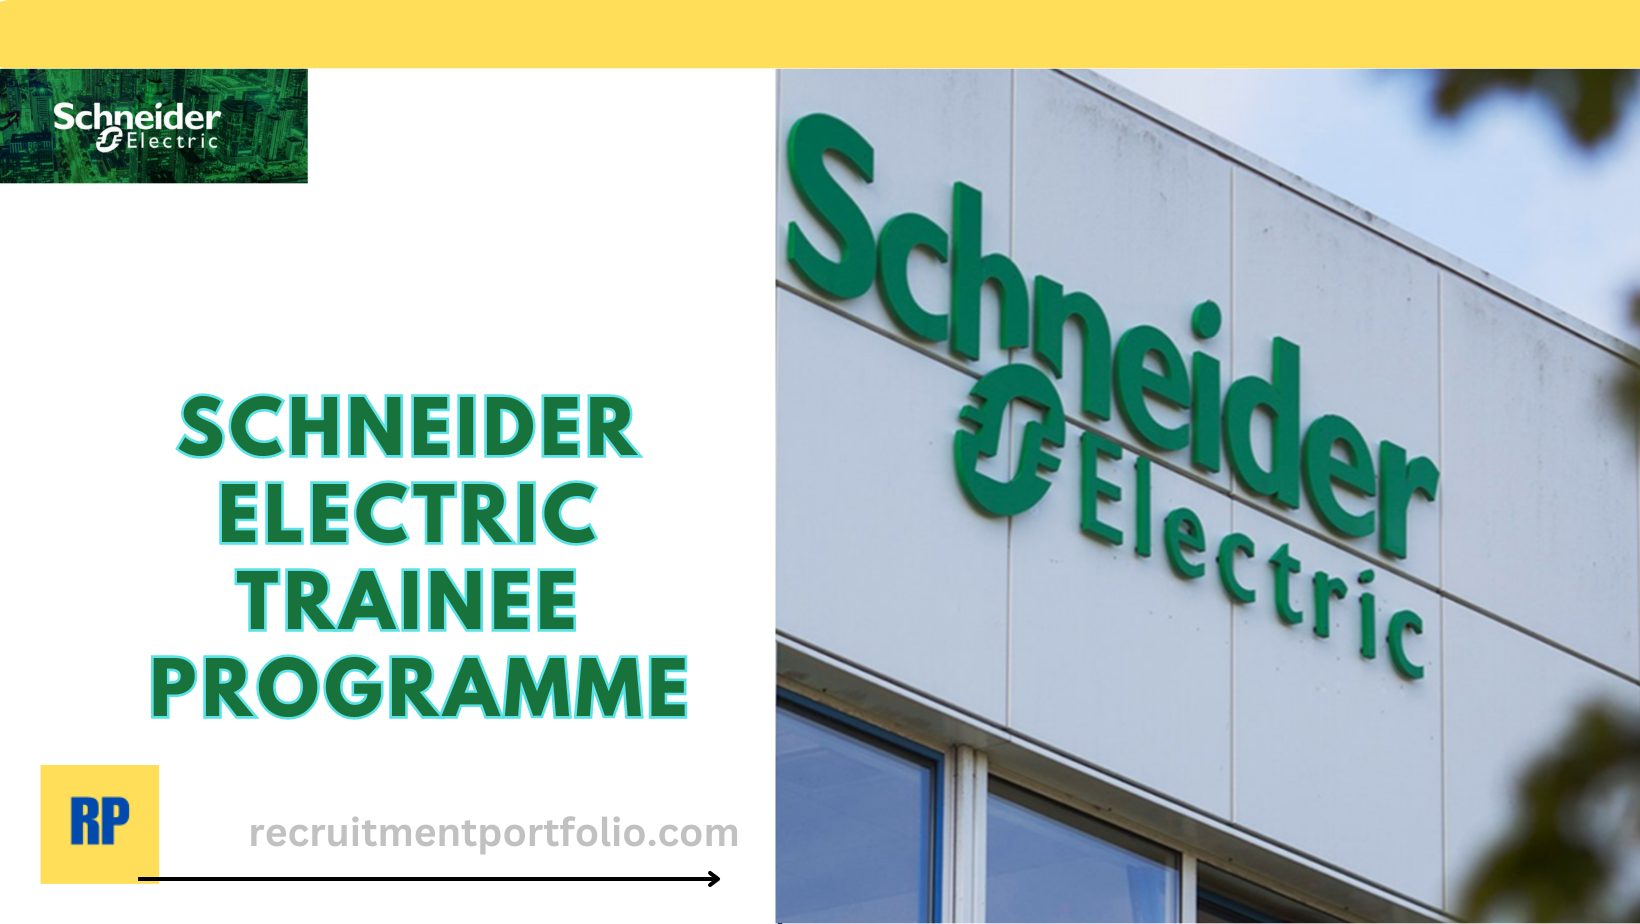 Schneider Electric Graduate Trainee, Schneider Electric.